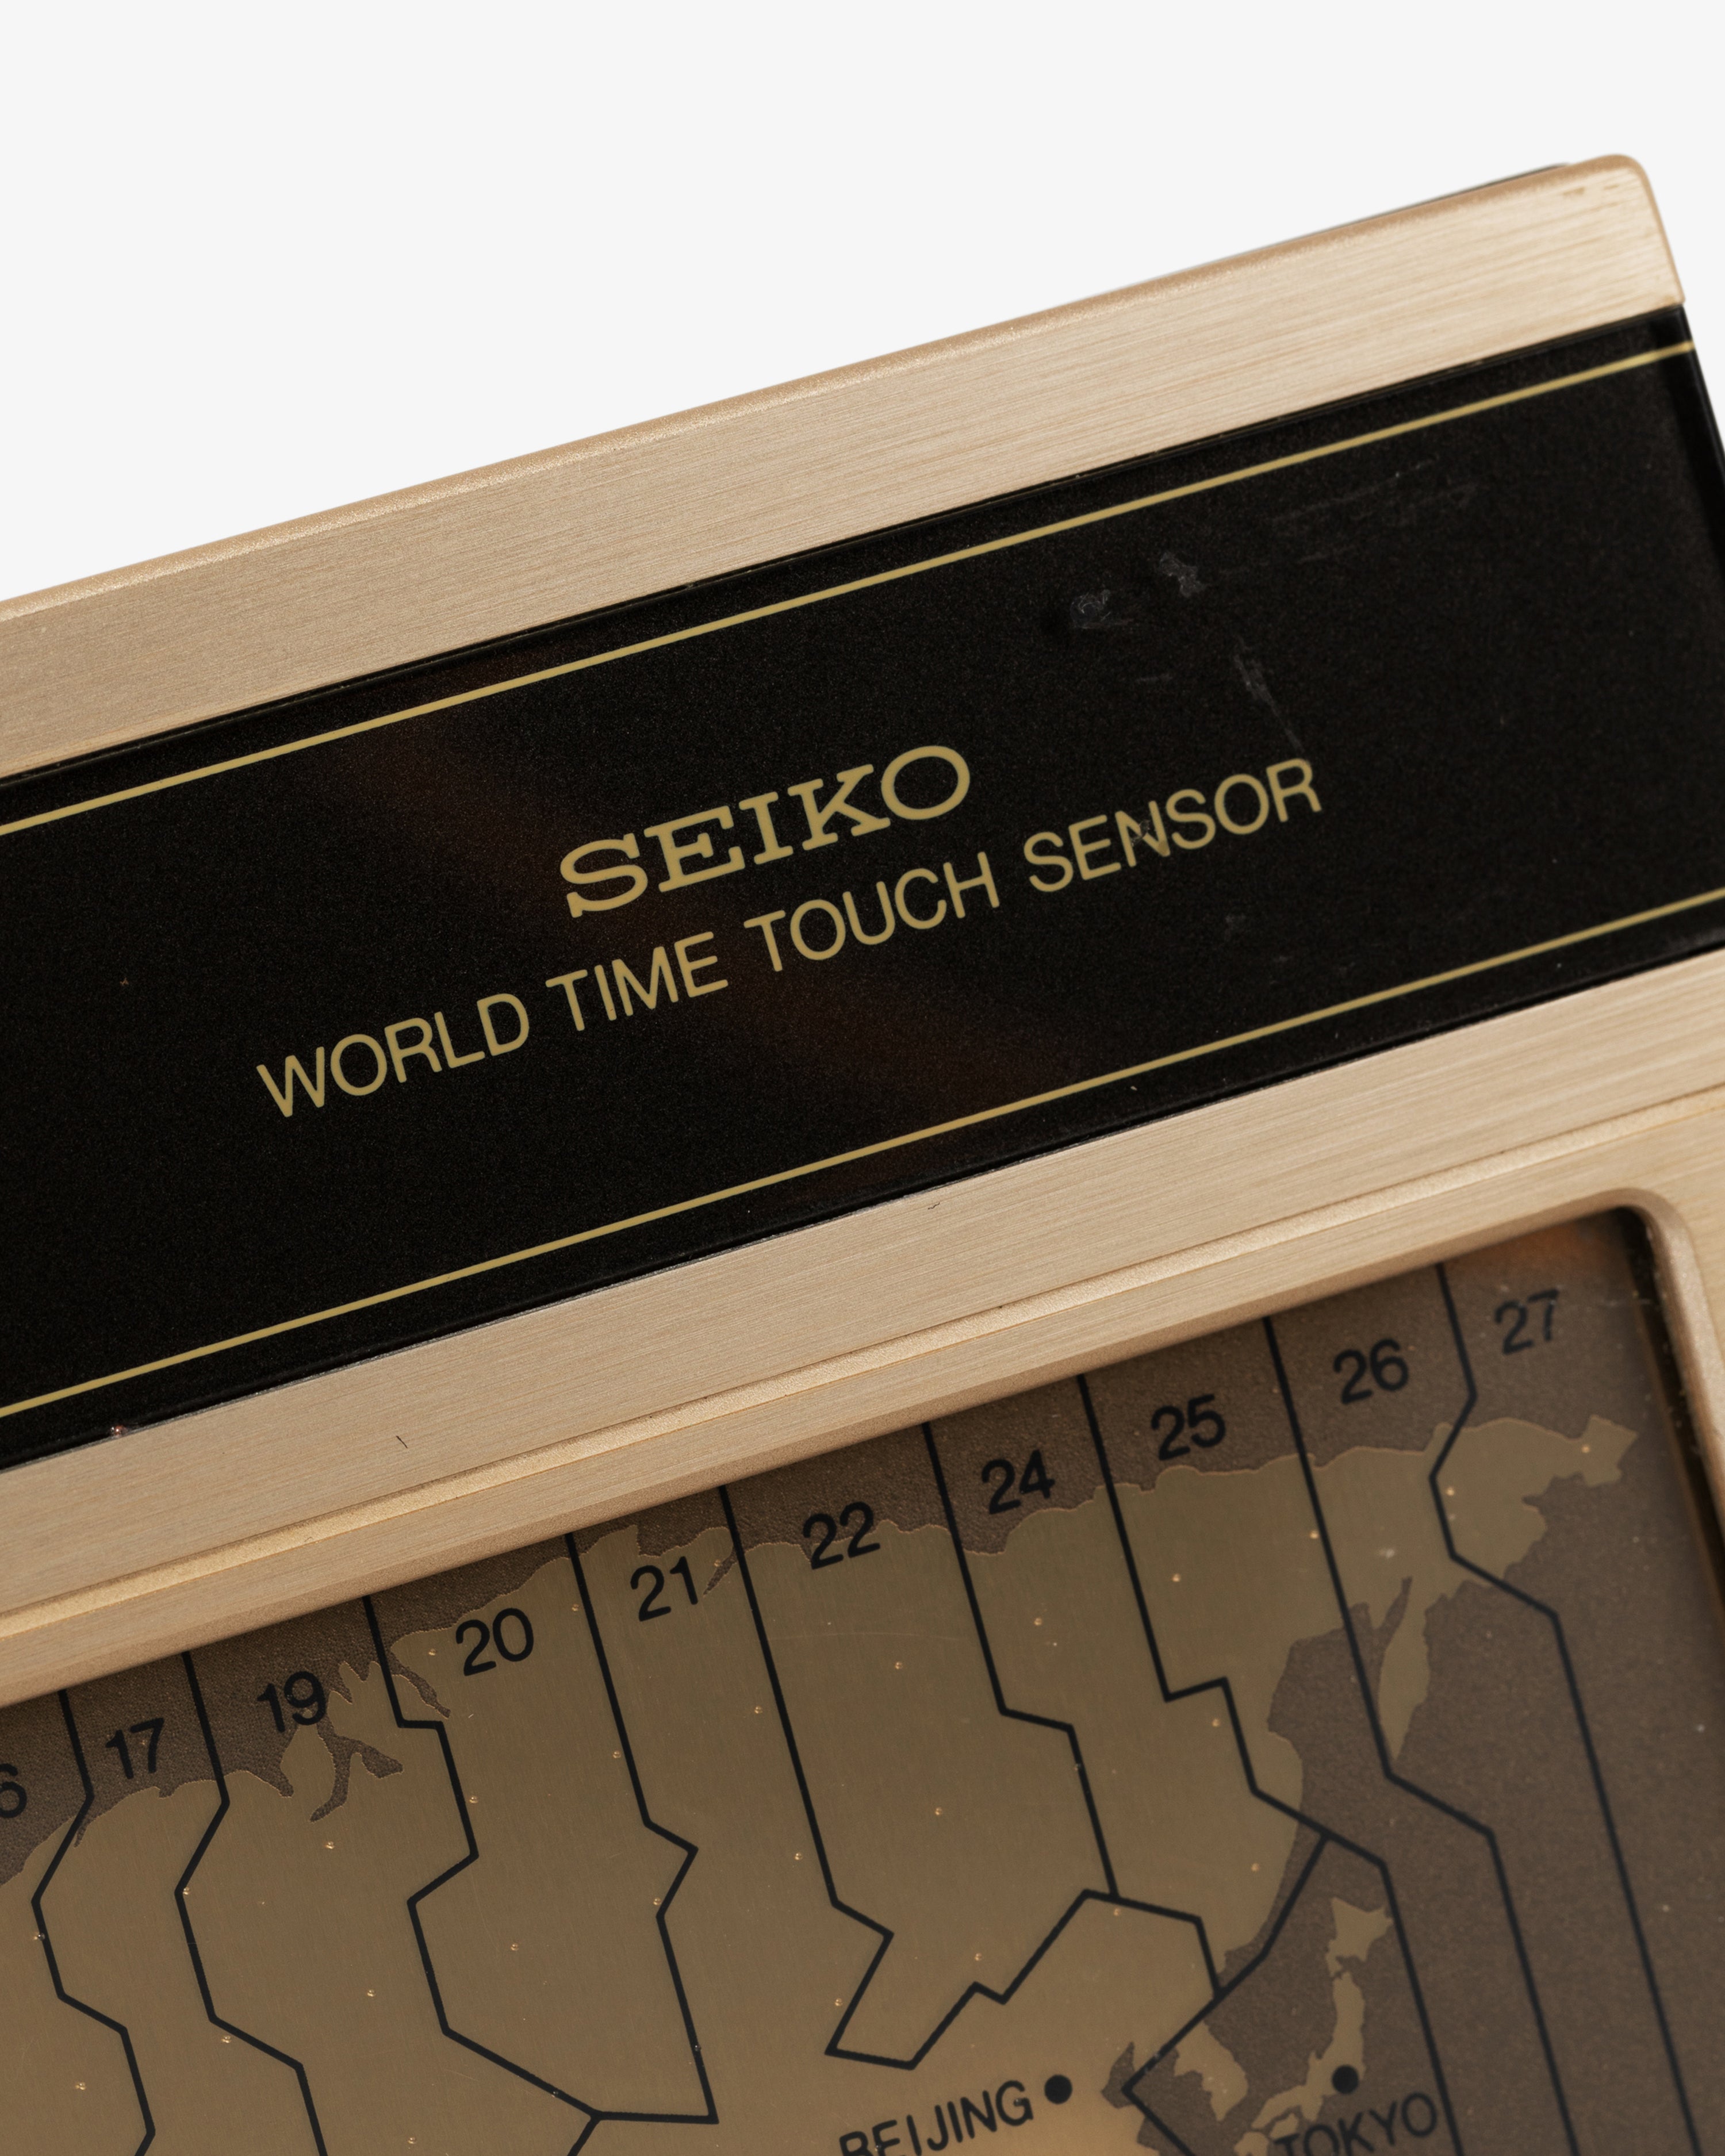 Vintage Seiko World Time Touch Sensor Clock